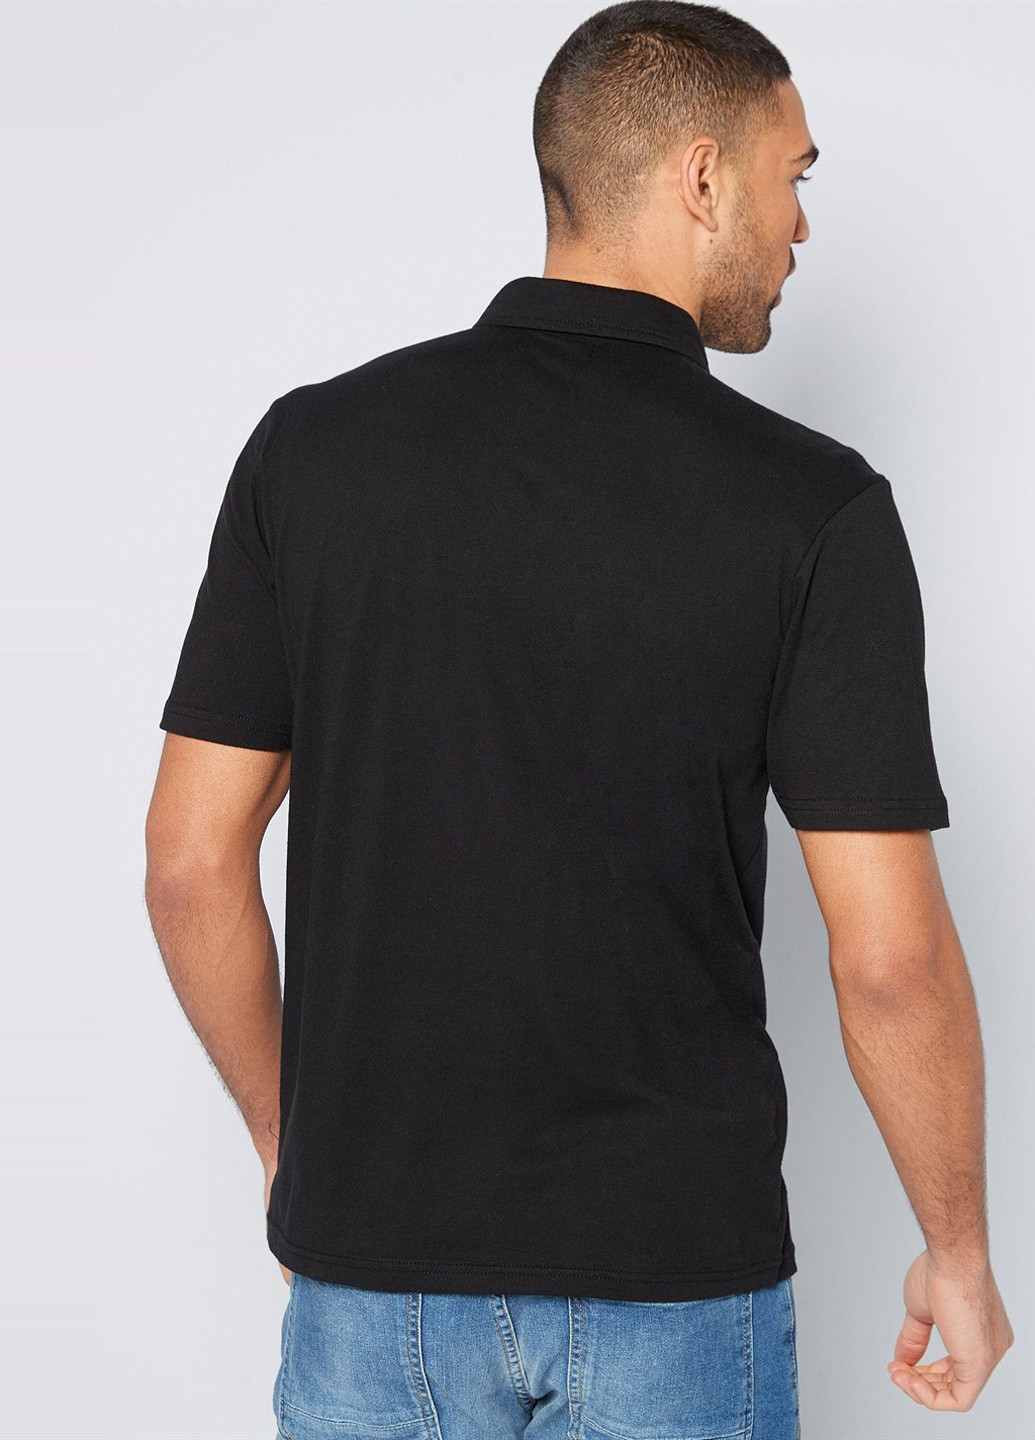 Черная футболка-поло для мужчин Studio однотонная